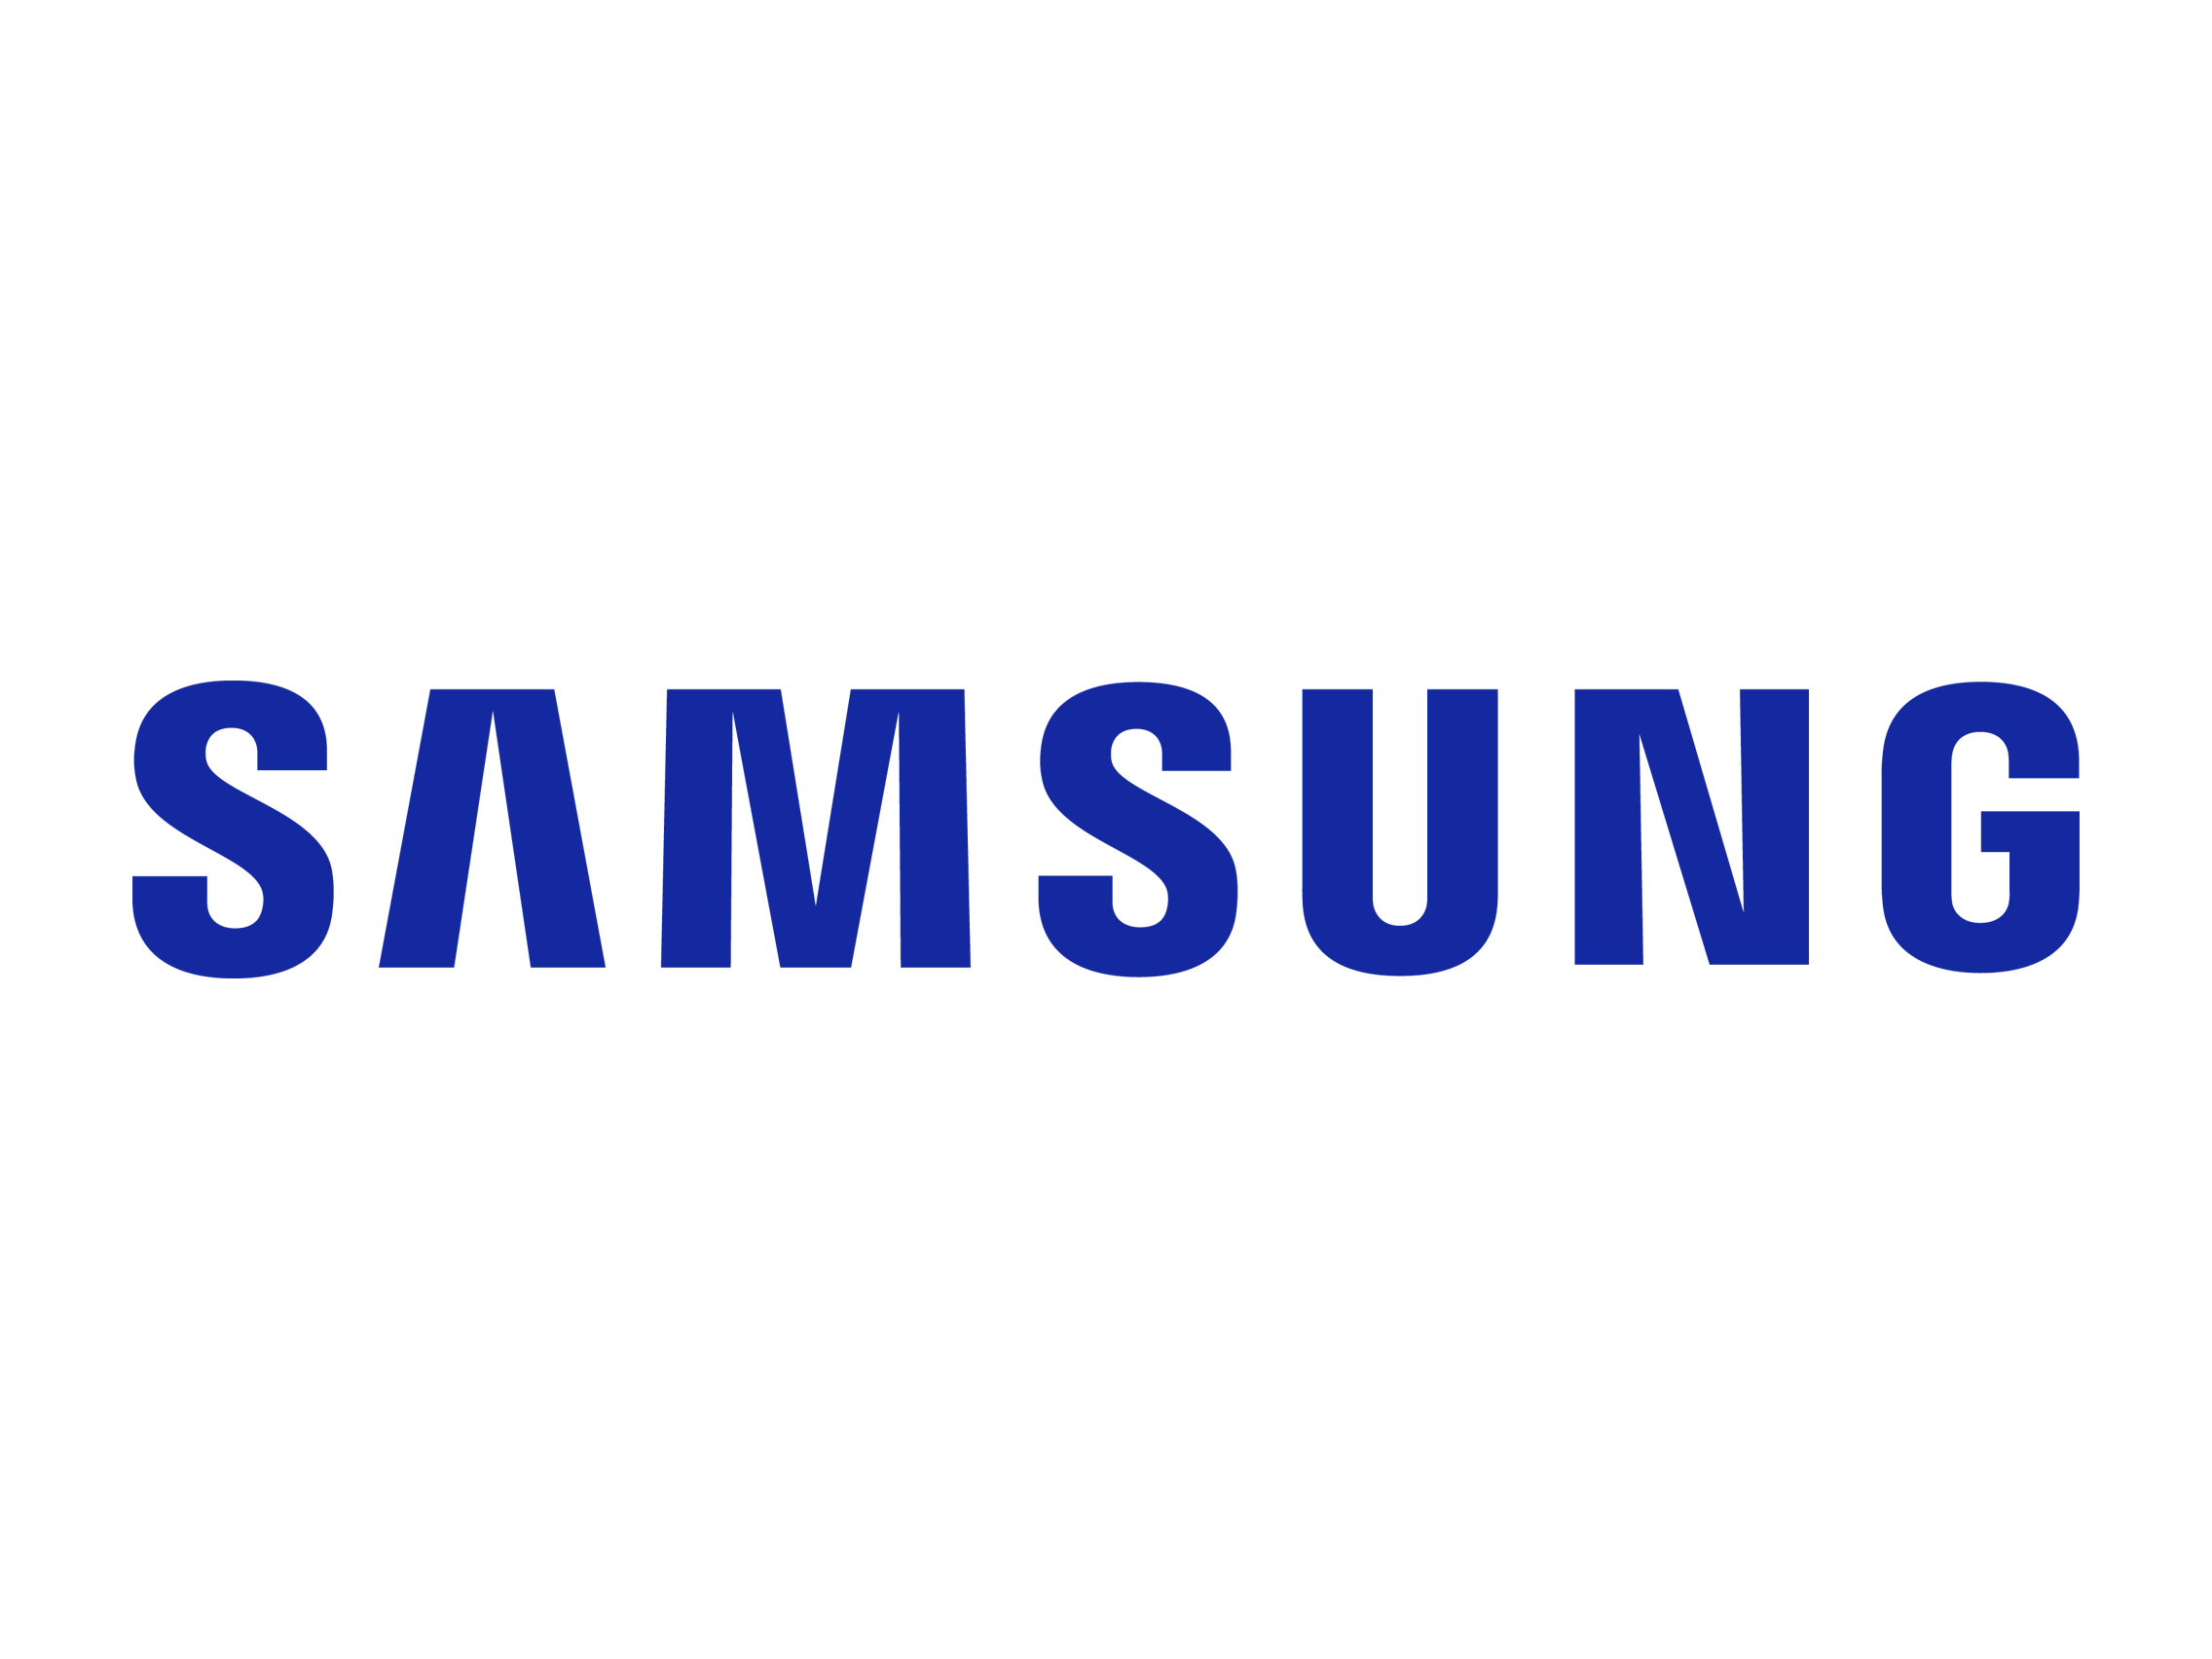 Hình ảnh động Samsung miễn phí - điều đặc biệt hấp dẫn đã sẵn sàng chờ đón bạn. Truy cập ngay để có thể chiêm ngưỡng logo của Samsung được tạo nên với hiệu ứng động tuyệt đẹp. Hãy tận hưởng những tính năng công nghệ thú vị của Samsung bằng những hình ảnh động tuyệt vời này.